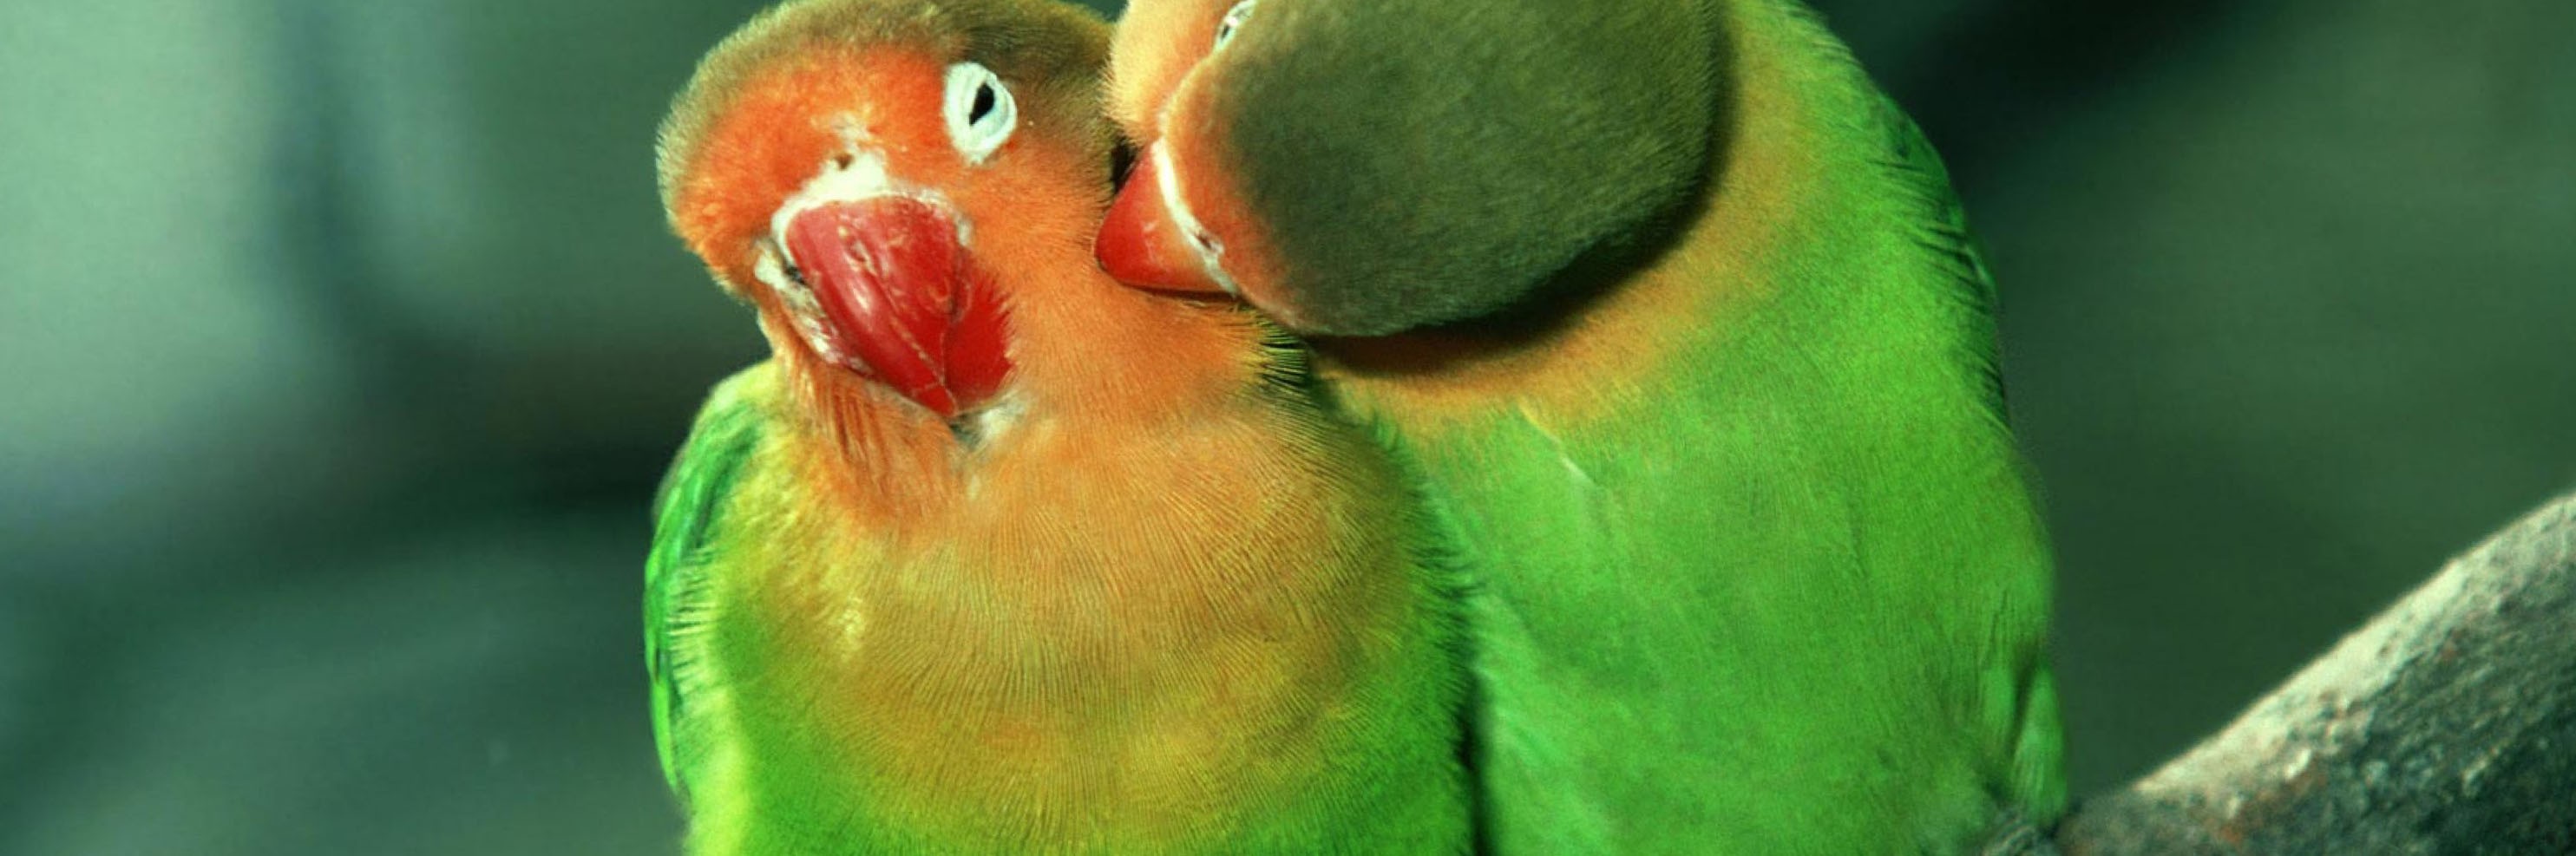 Love Birds Good Morning - HD Wallpaper 